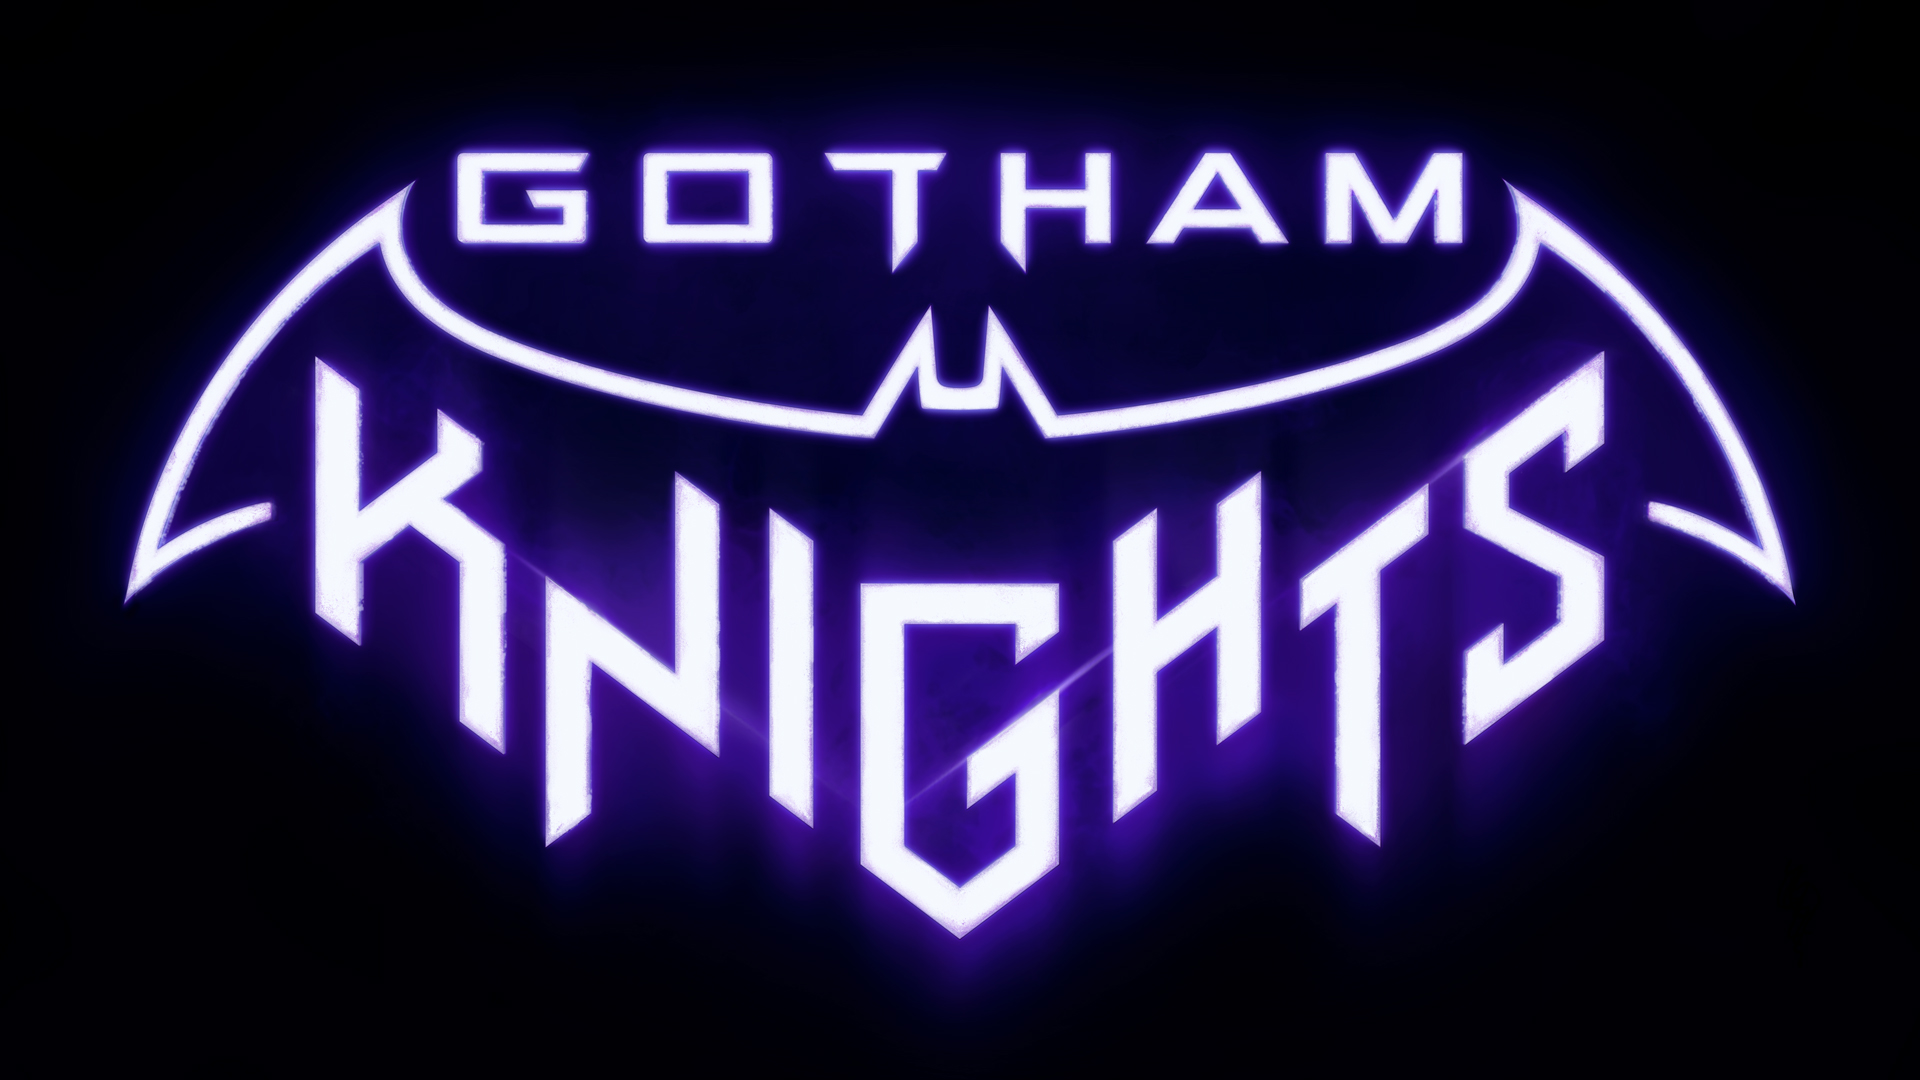 Gotham Knights ufficialmente rinviato al 2022